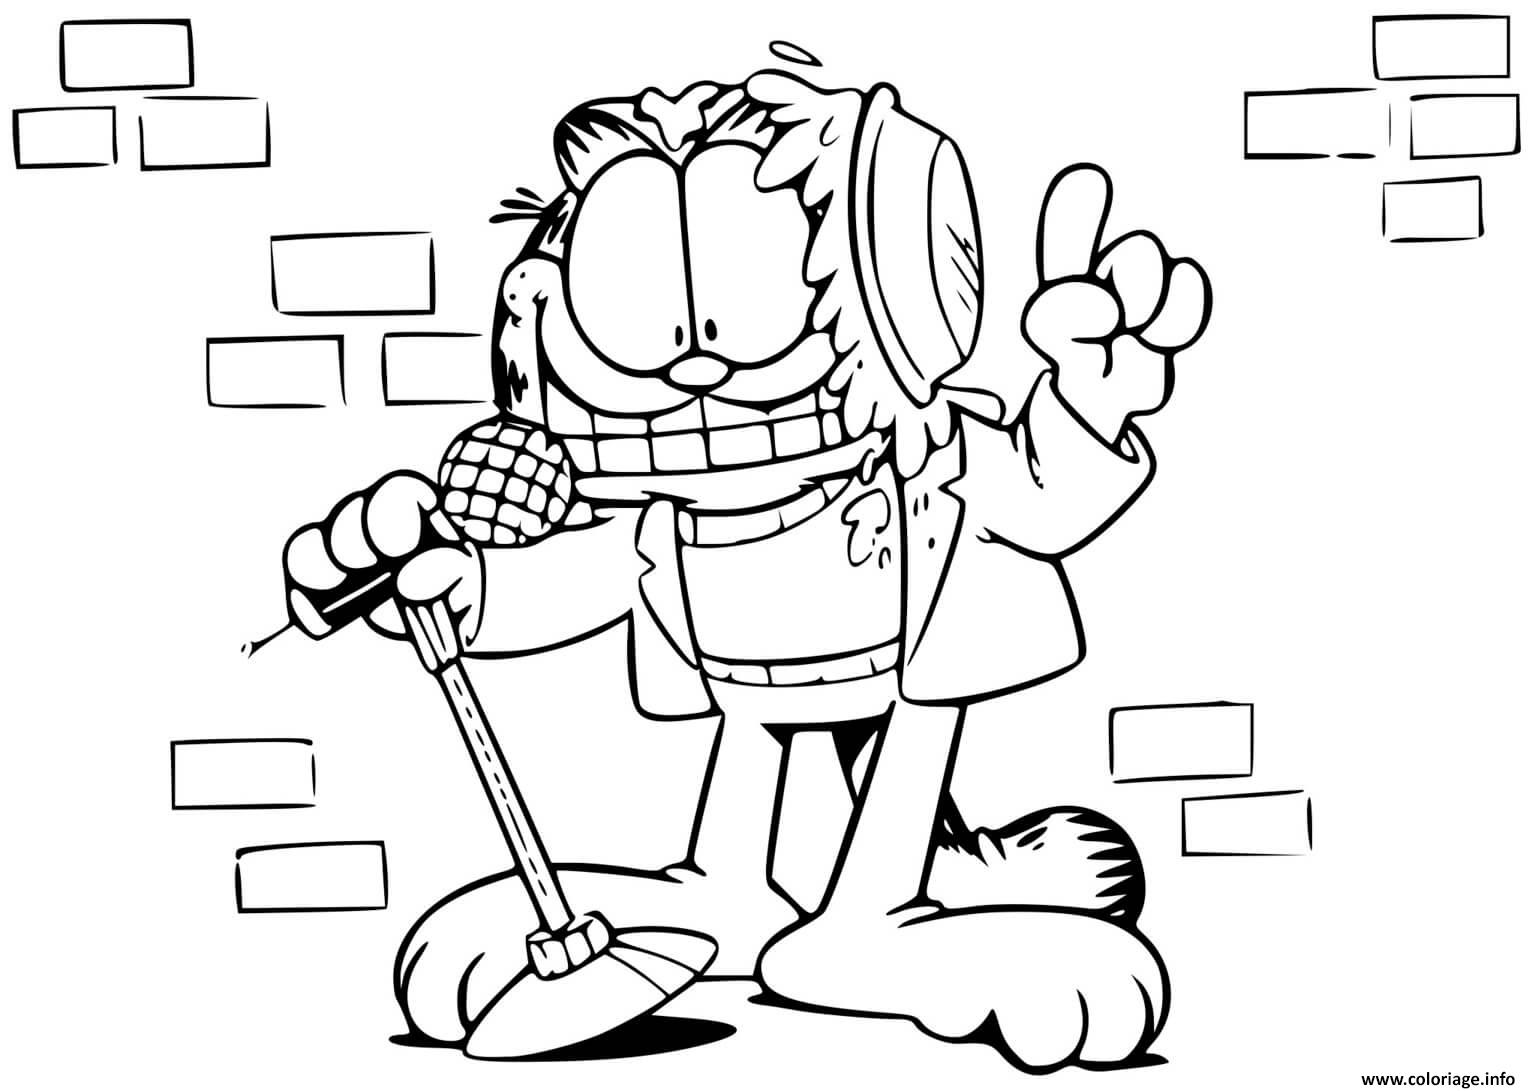 Coloriage Garfield Au Comedy Club Pour Un Spectacle Humour Dessin à Imprimer